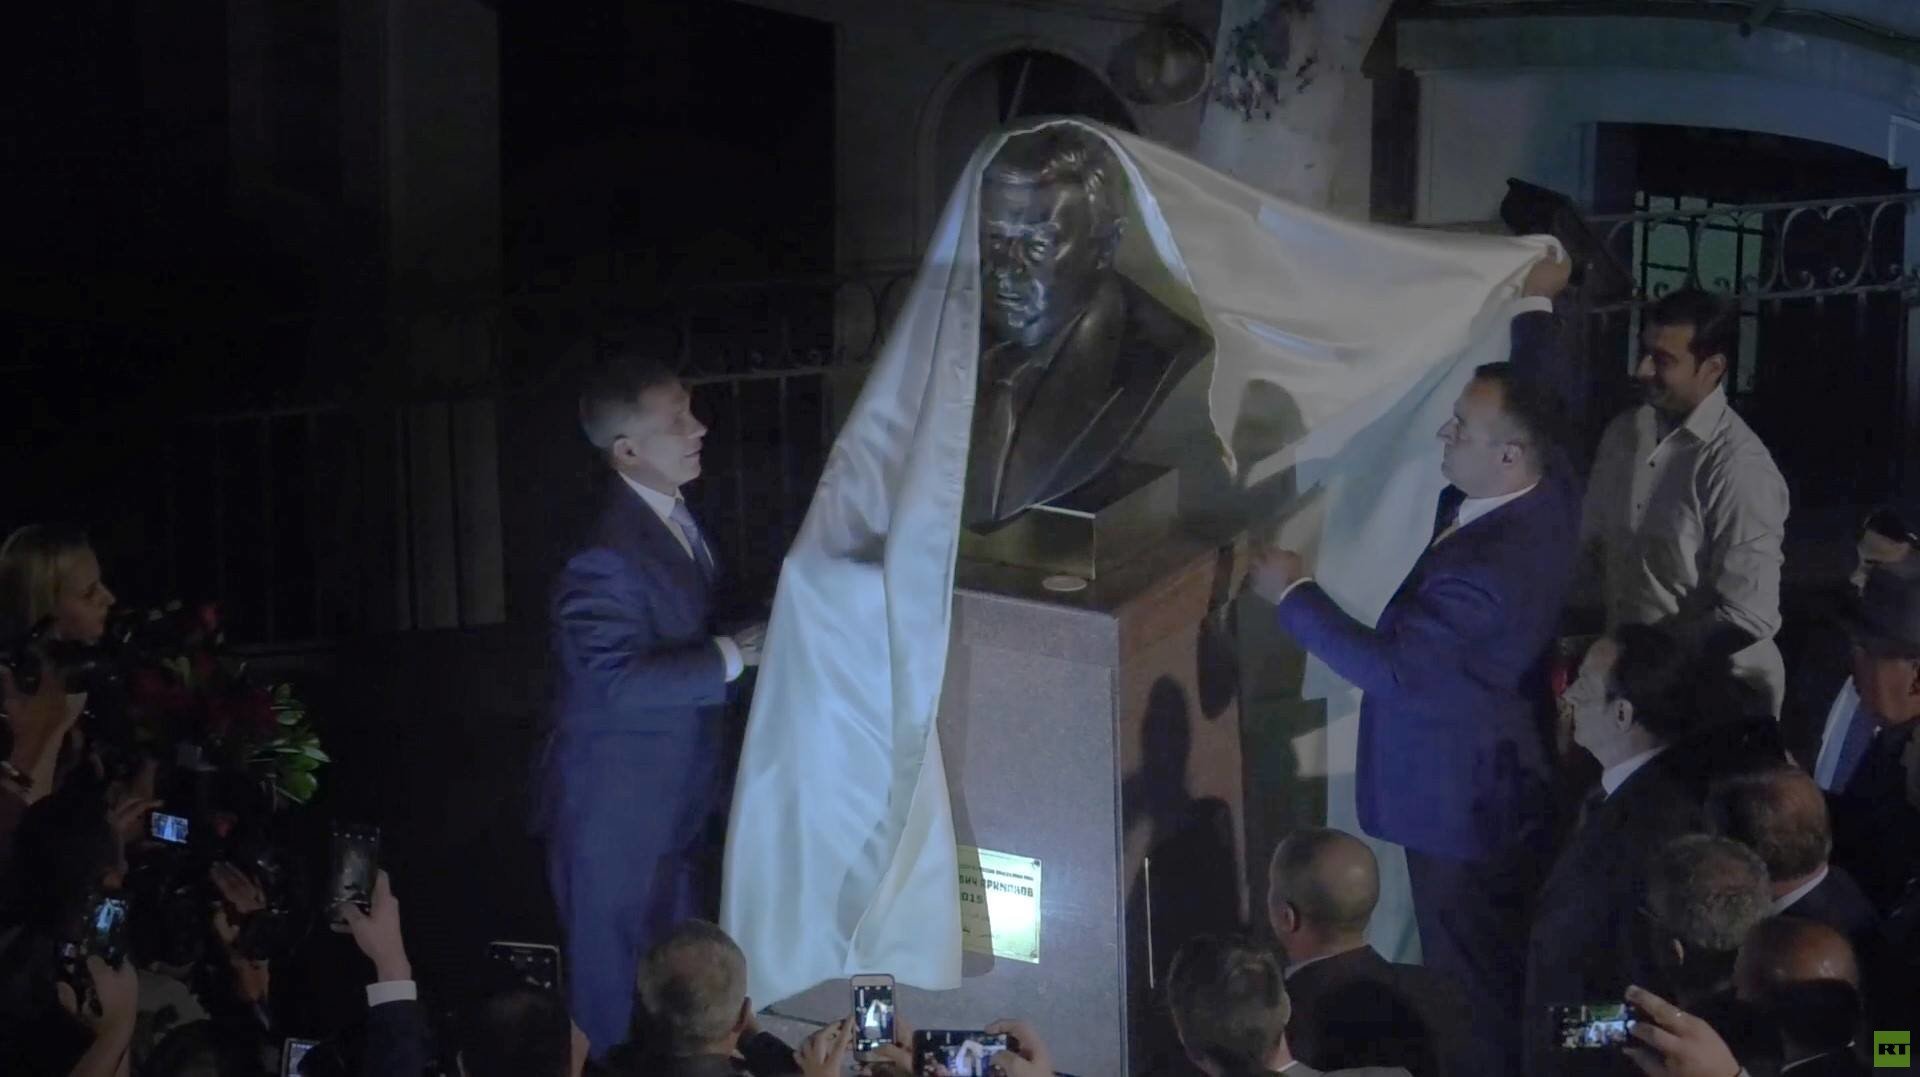 تدشين تمثال لرئيس الوزراء الروسي الأسبق بريماكوف في مصر (صور)